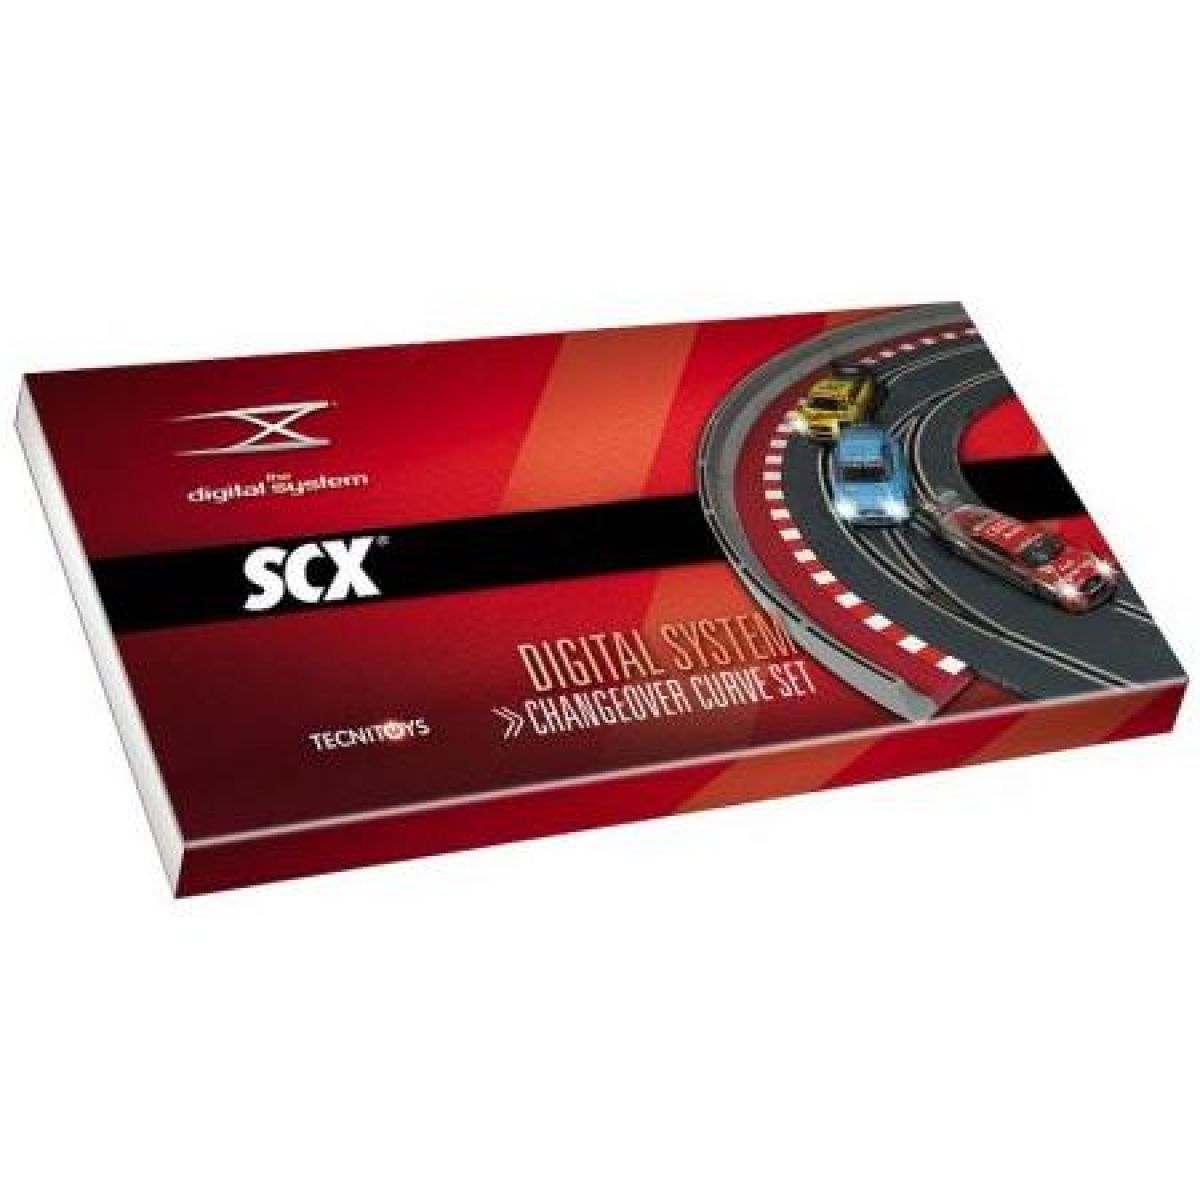 SCX Digital System - Zatáčka s obousměrnou výhybkou